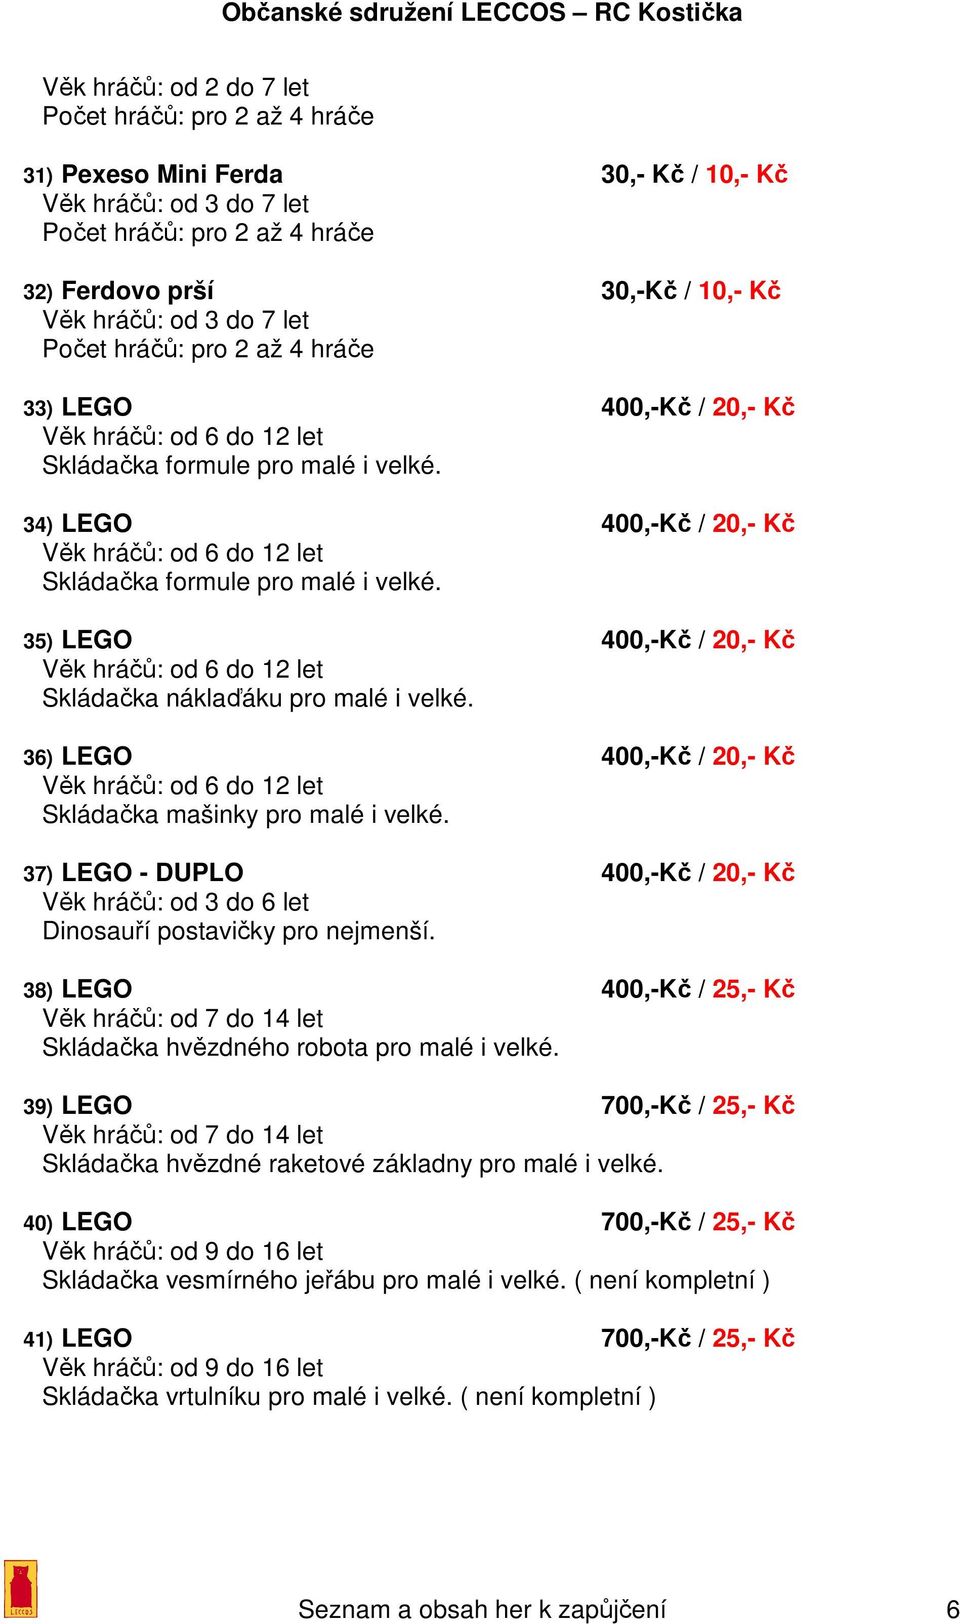 37) LEGO - DUPLO 400,-Kč / 20,- Kč Věk hráčů: od 3 do 6 let Dinosauří postavičky pro nejmenší. 38) LEGO 400,-Kč / 25,- Kč Věk hráčů: od 7 do 14 let Skládačka hvězdného robota pro malé i velké.